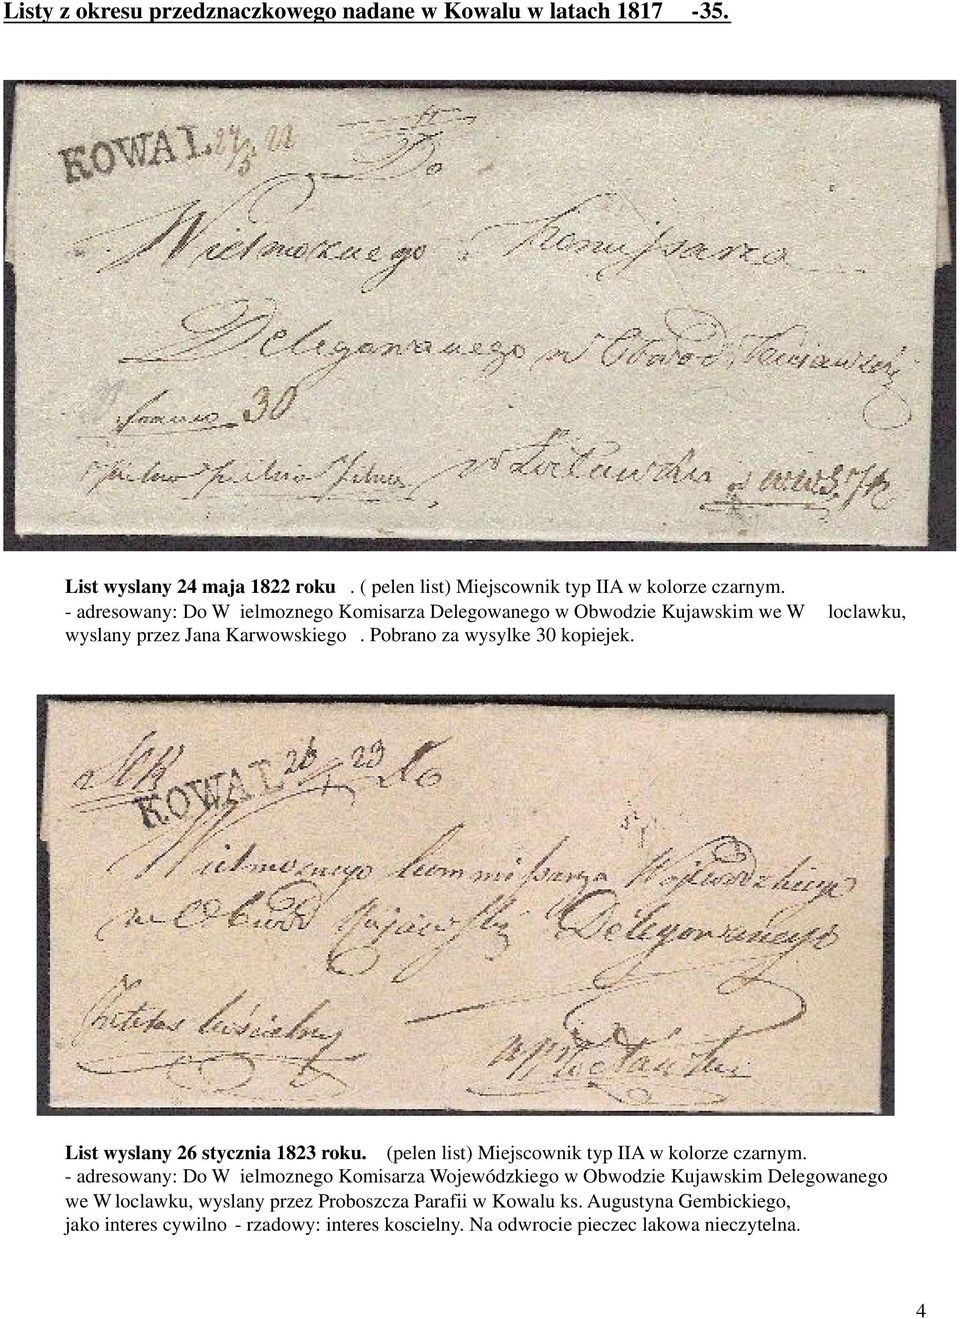 List wyslany 26 stycznia 1823 roku. (pelen list) Miejscownik typ IIA w kolorze czarnym.